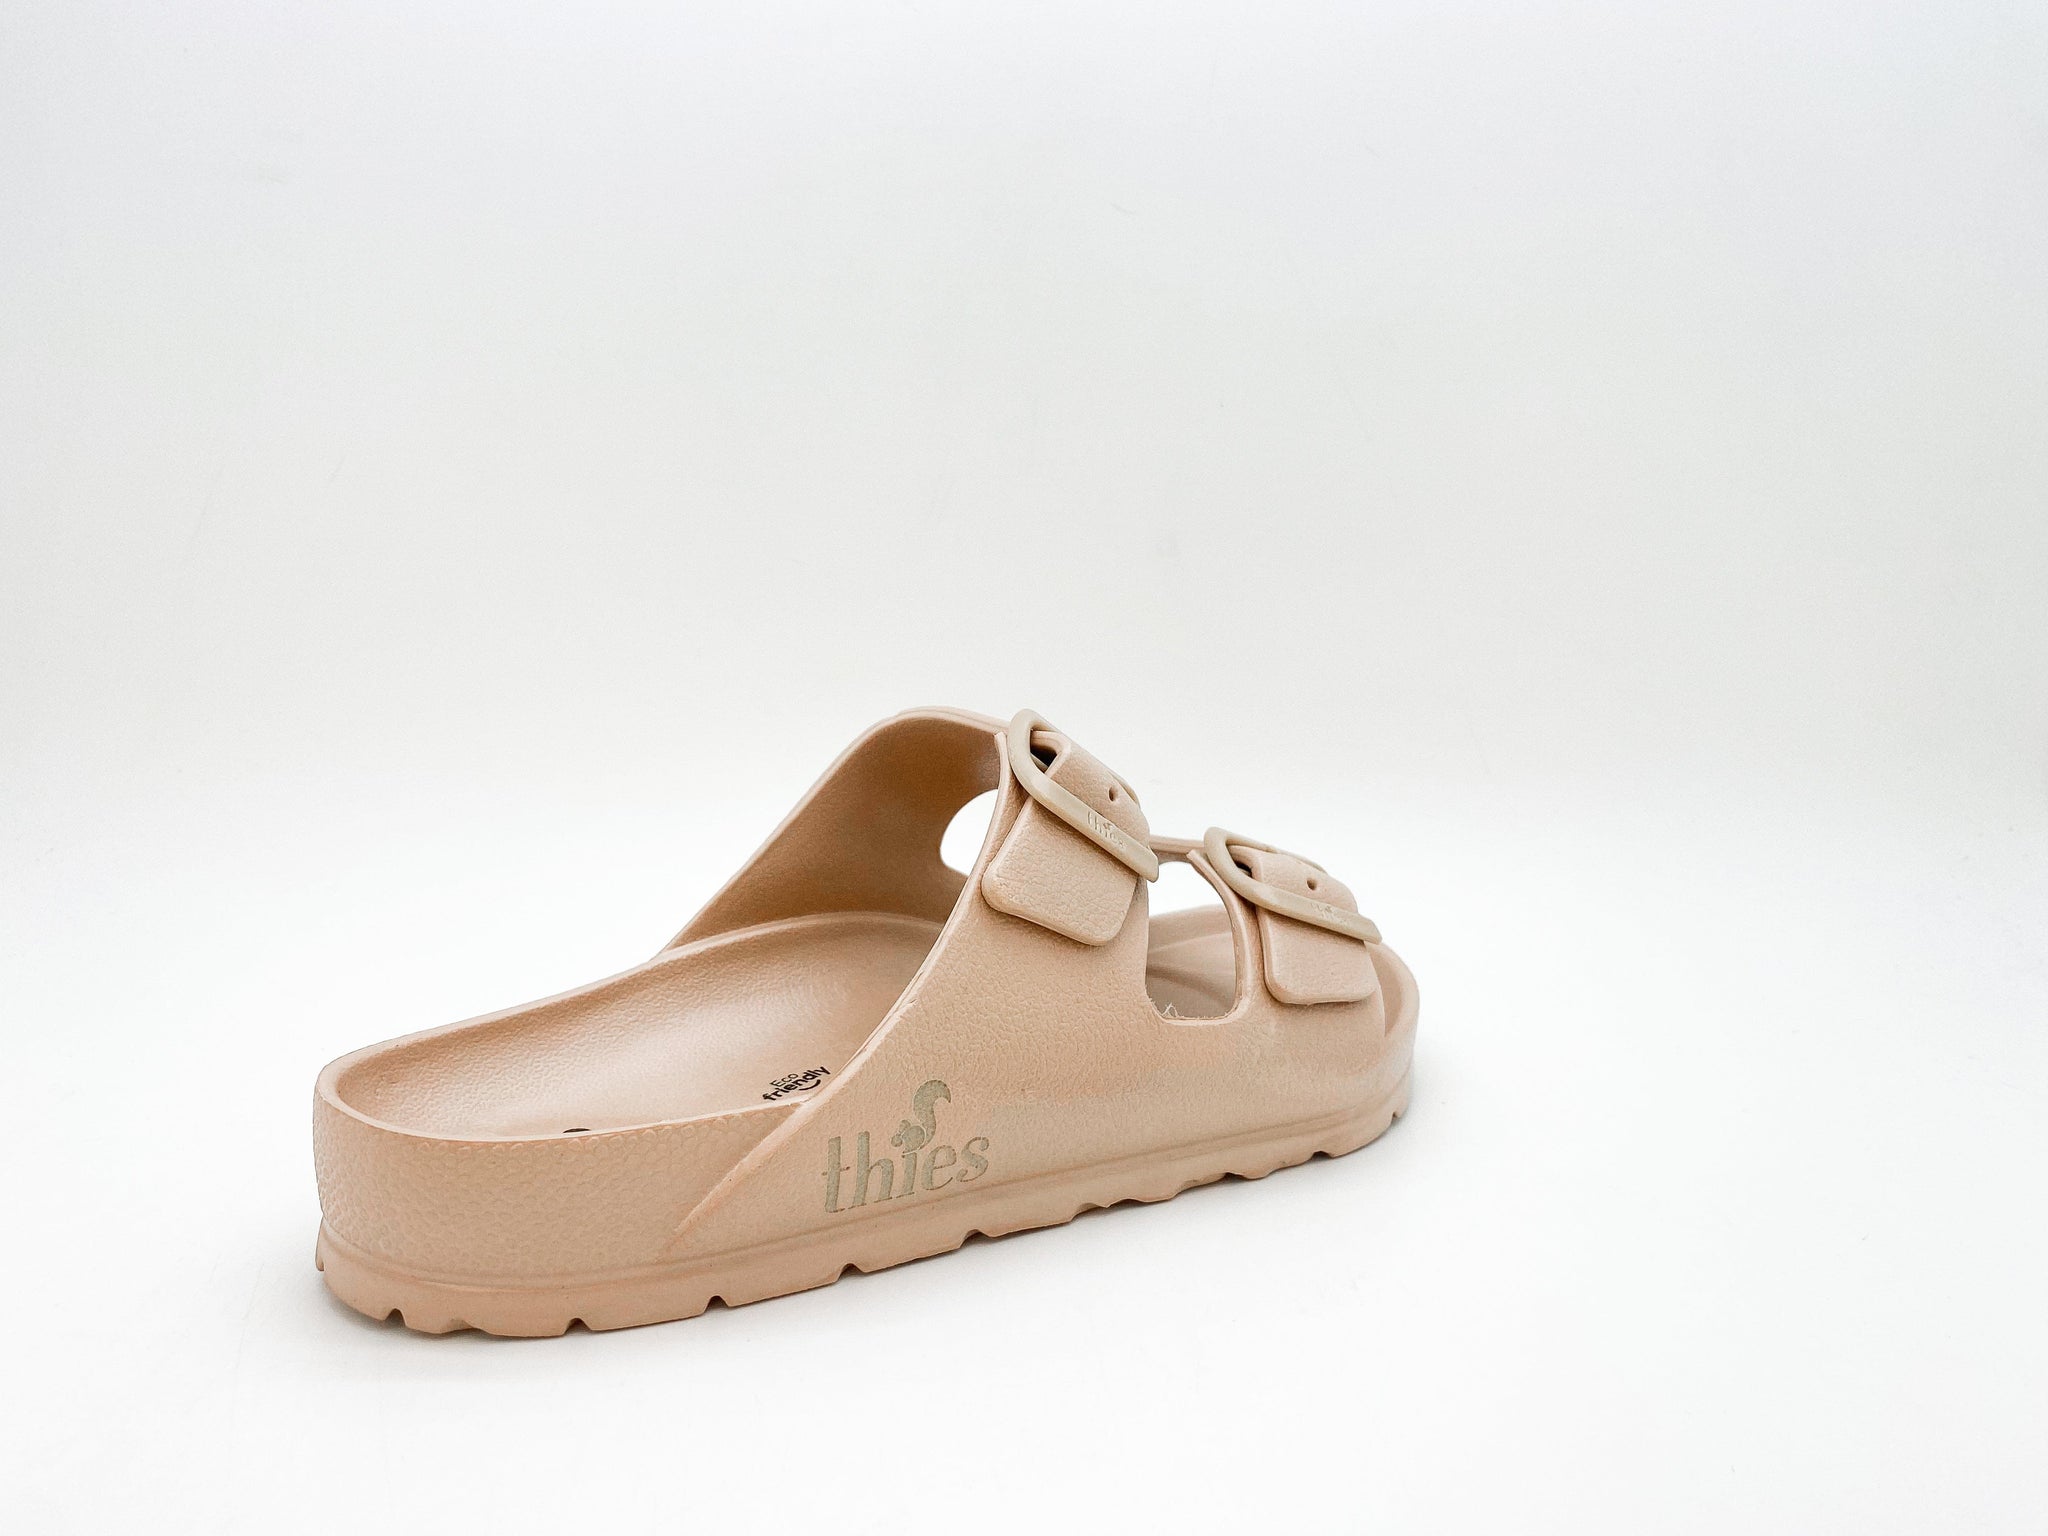 NAT 2 calzado thies 1856 ® Ecofoam Sandalia bronce moda sostenible moda ética